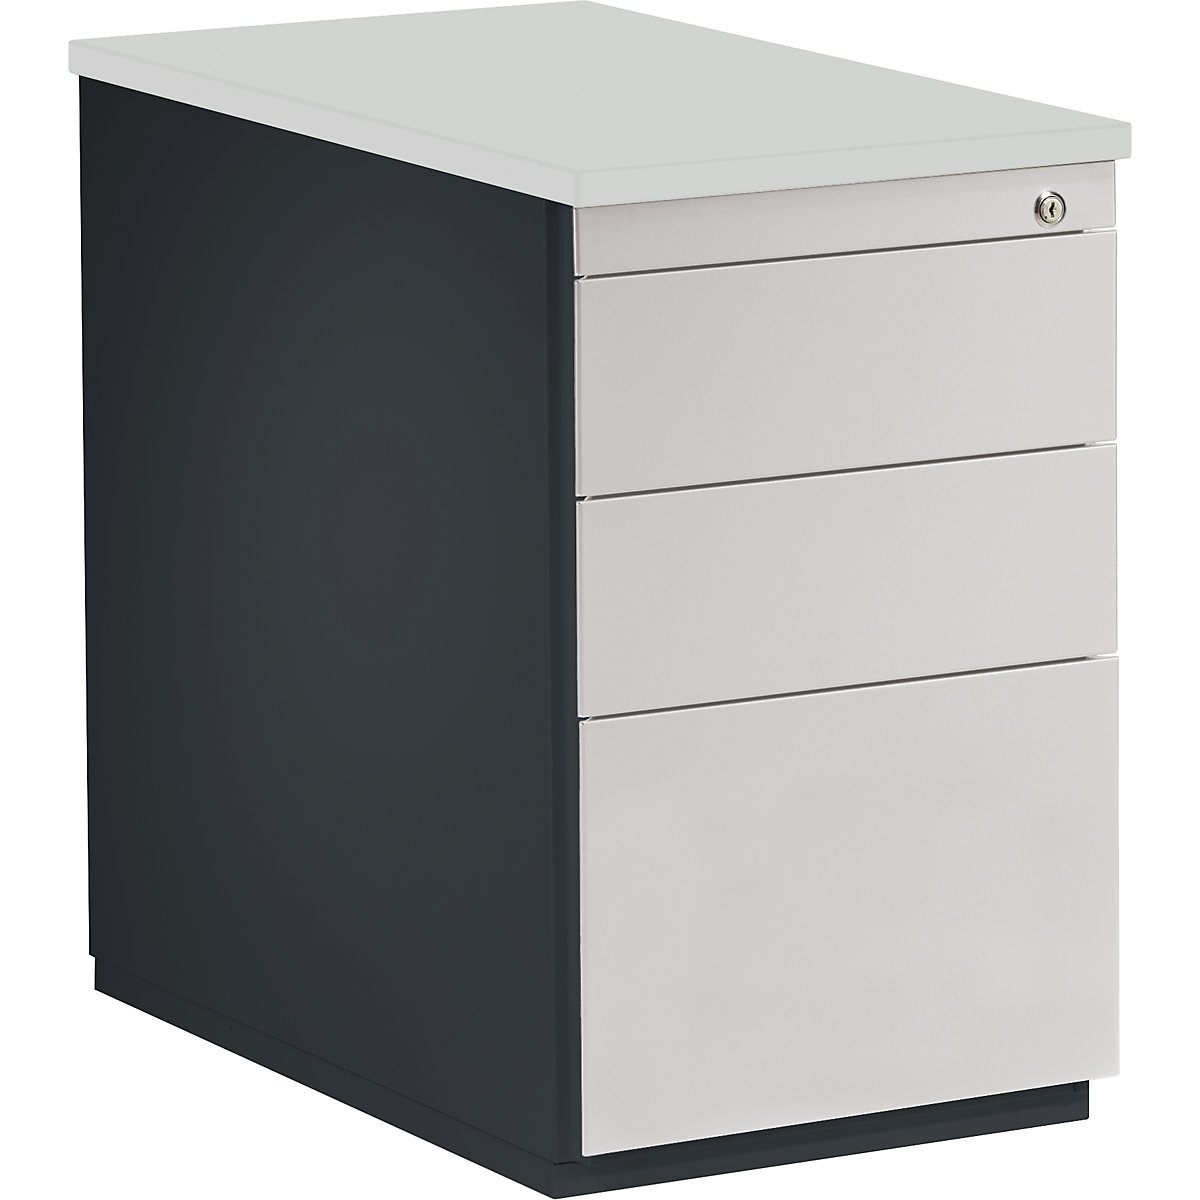 Zásuvkový kontajner – mauser, v x š 720 x 800 mm, 2 zásuvky na materiál, 1 závesná registratúra, antracitová / svetlošedá / svetlošedá-17